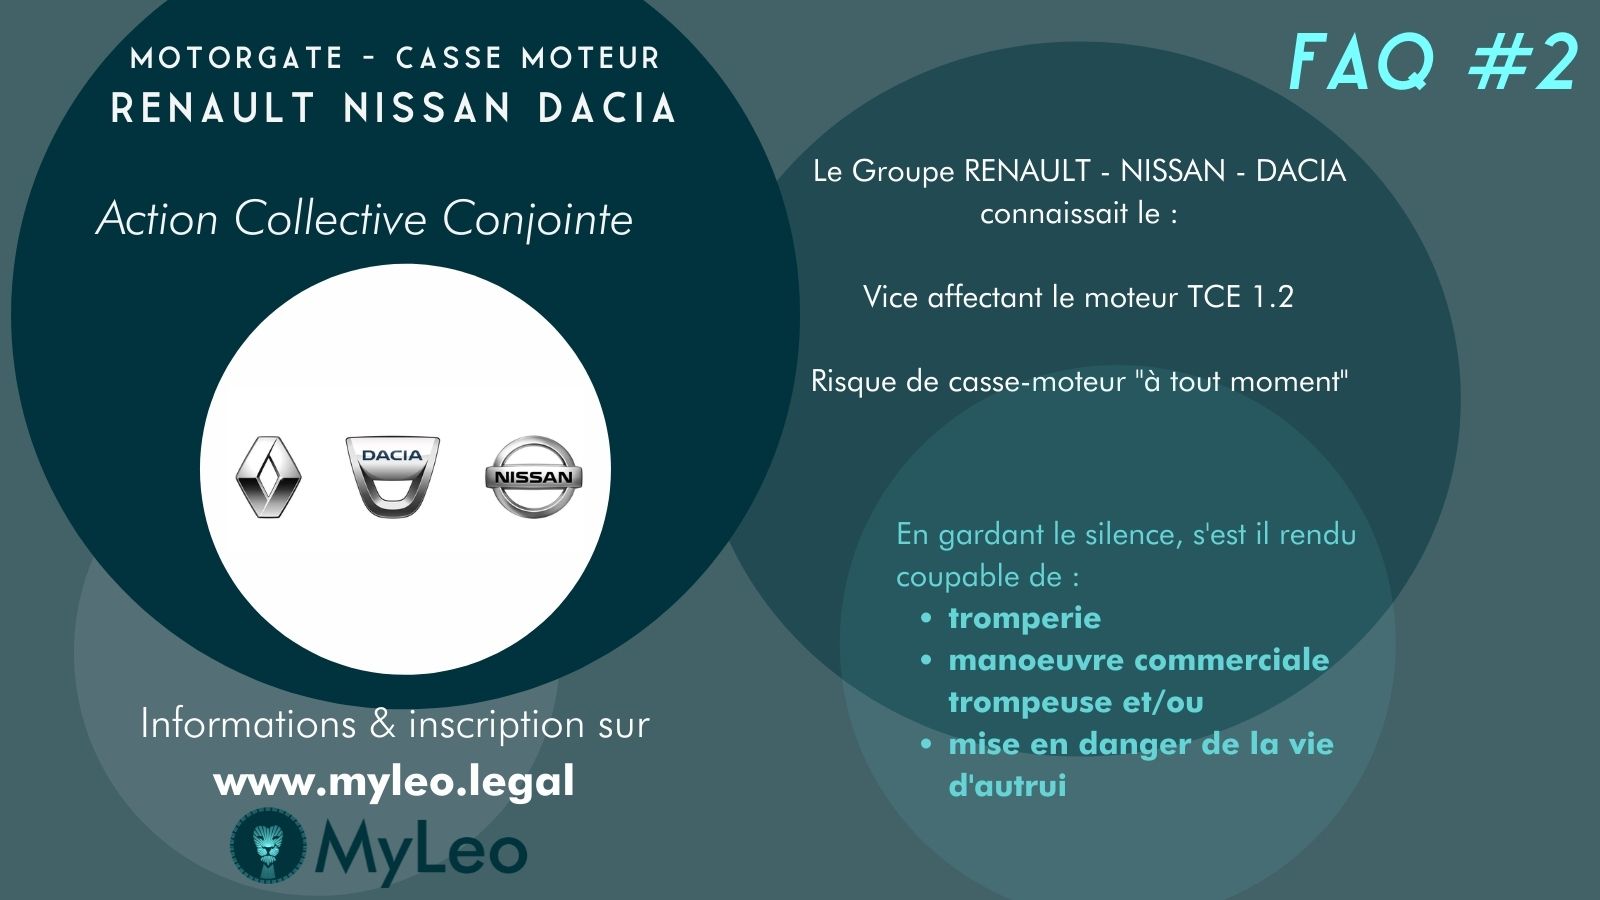 Principales questions / réponses sur le #Motorgate #Renault #Nissan #Dacia